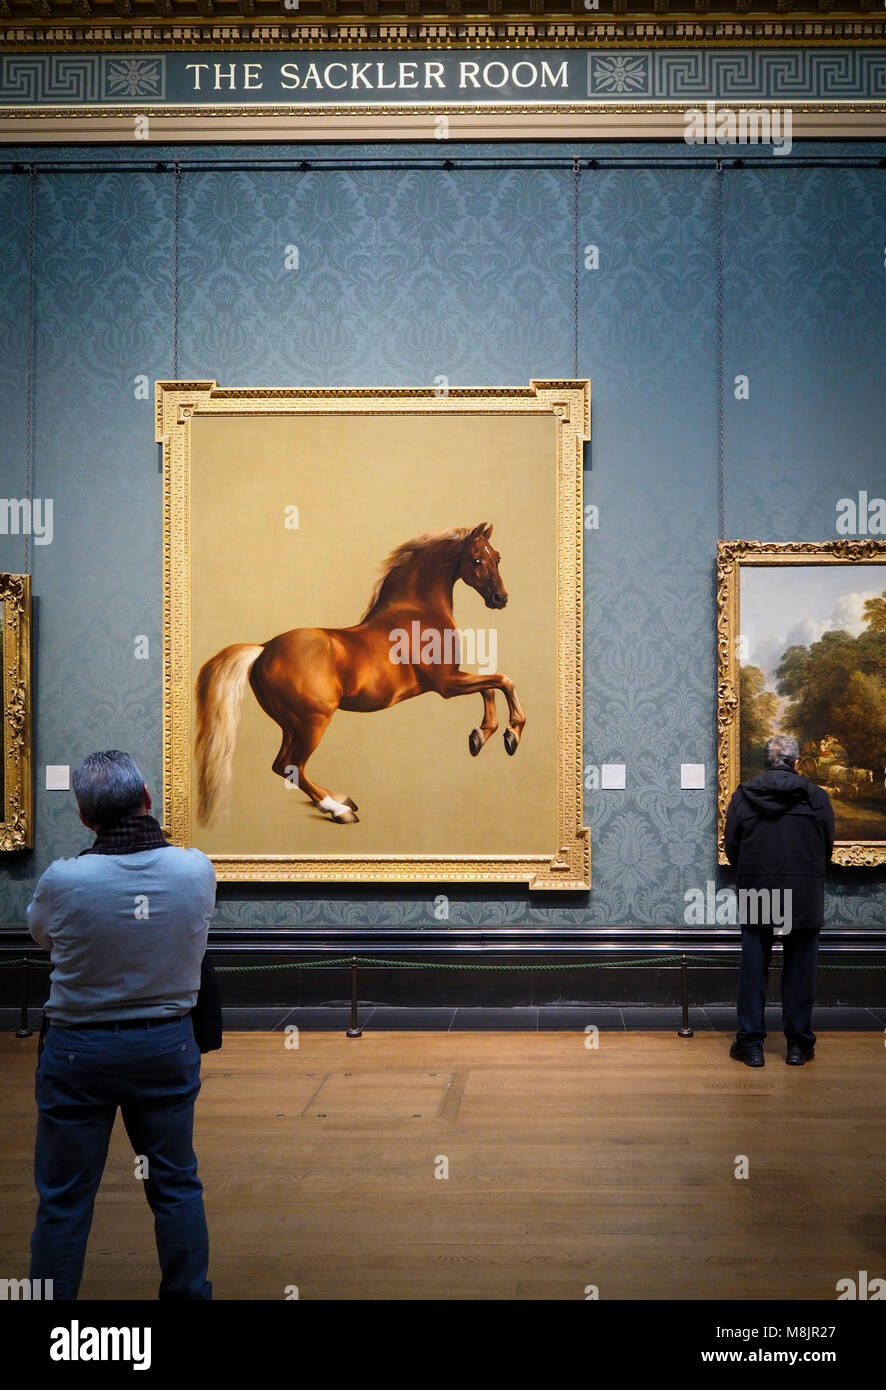 Londres, Royaume-Uni - 30 déc 2017 : les visiteurs de la National Gallery de Londres sont regarder George Stubbs' célèbre peinture à l'huile 'Whistlejacket'. Banque D'Images